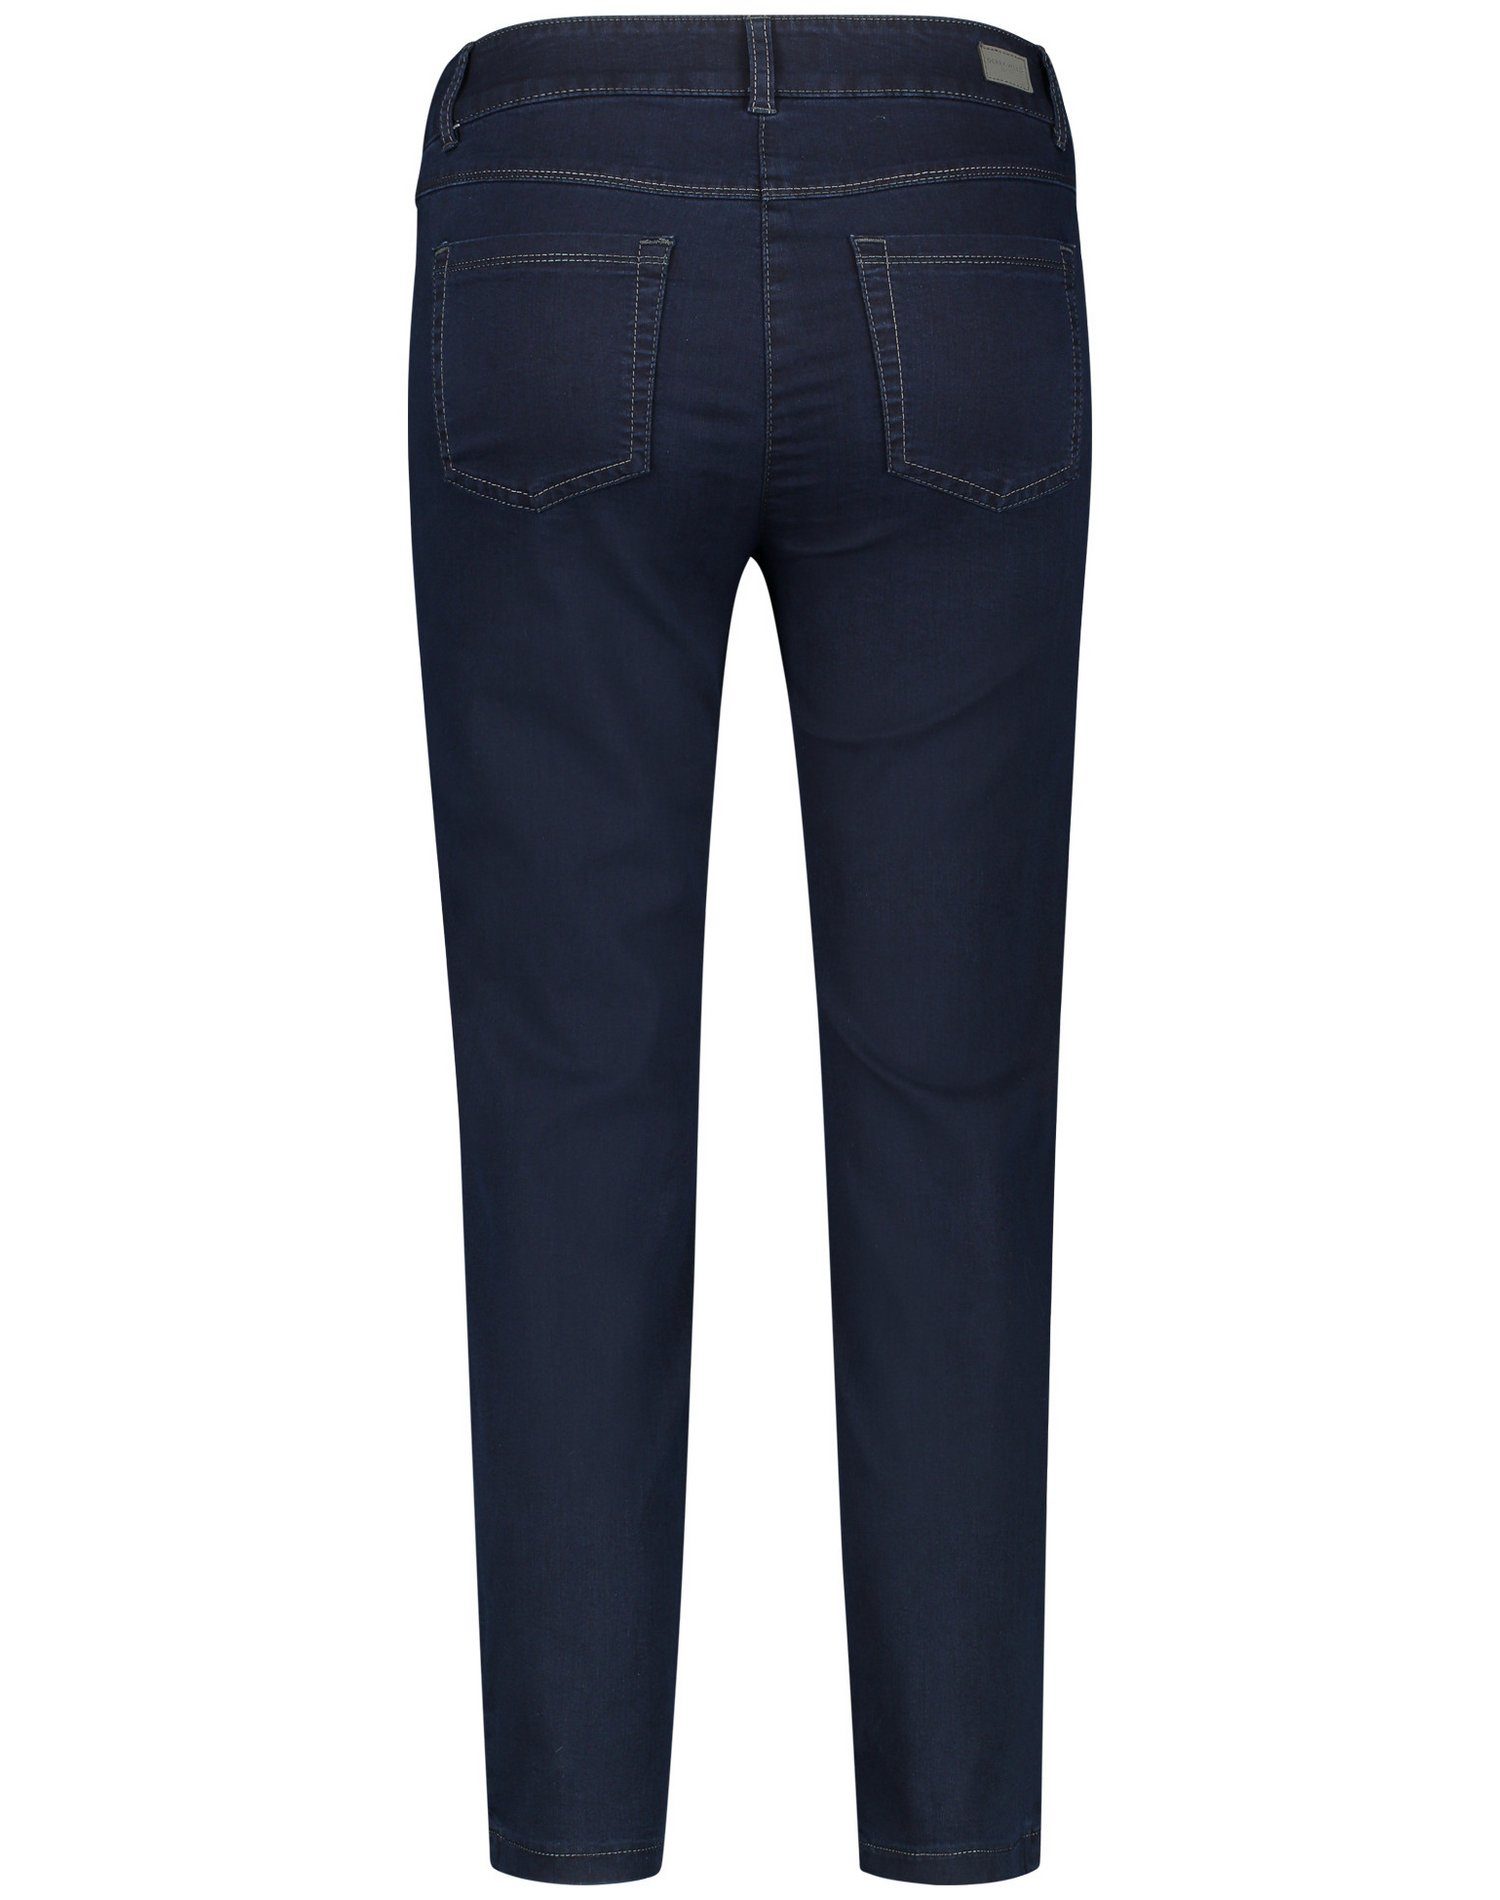 Best4me Dark 7/8-Jeans Hose 5-Pocket GERRY 7/8 Denim WEBER Blue